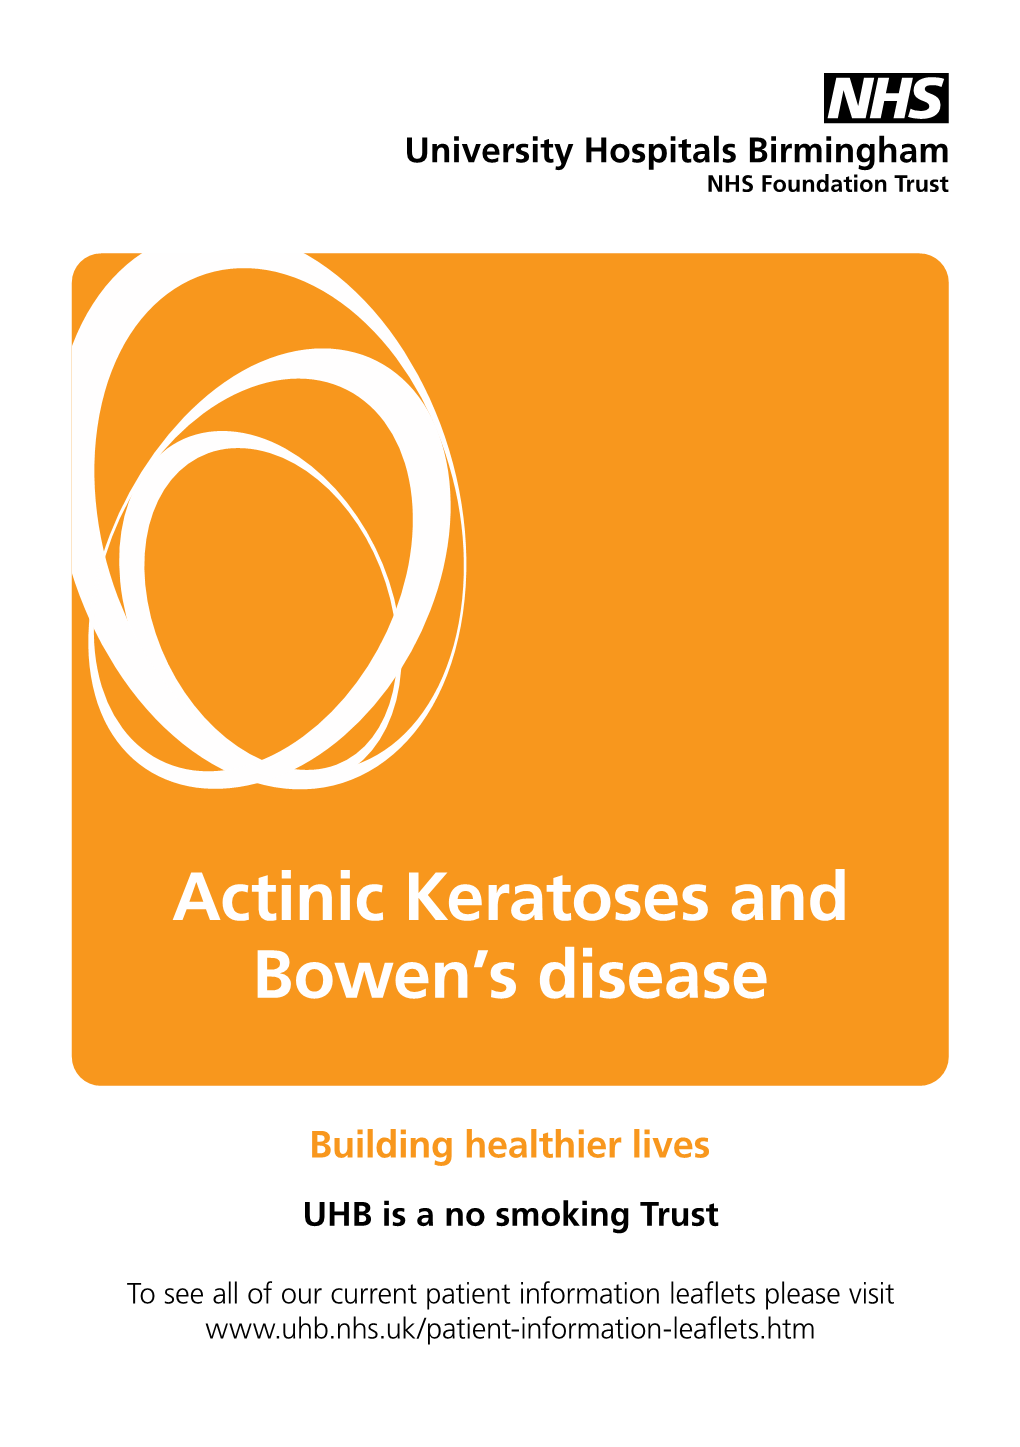 Actinic Keratoses and Bowen's Disease